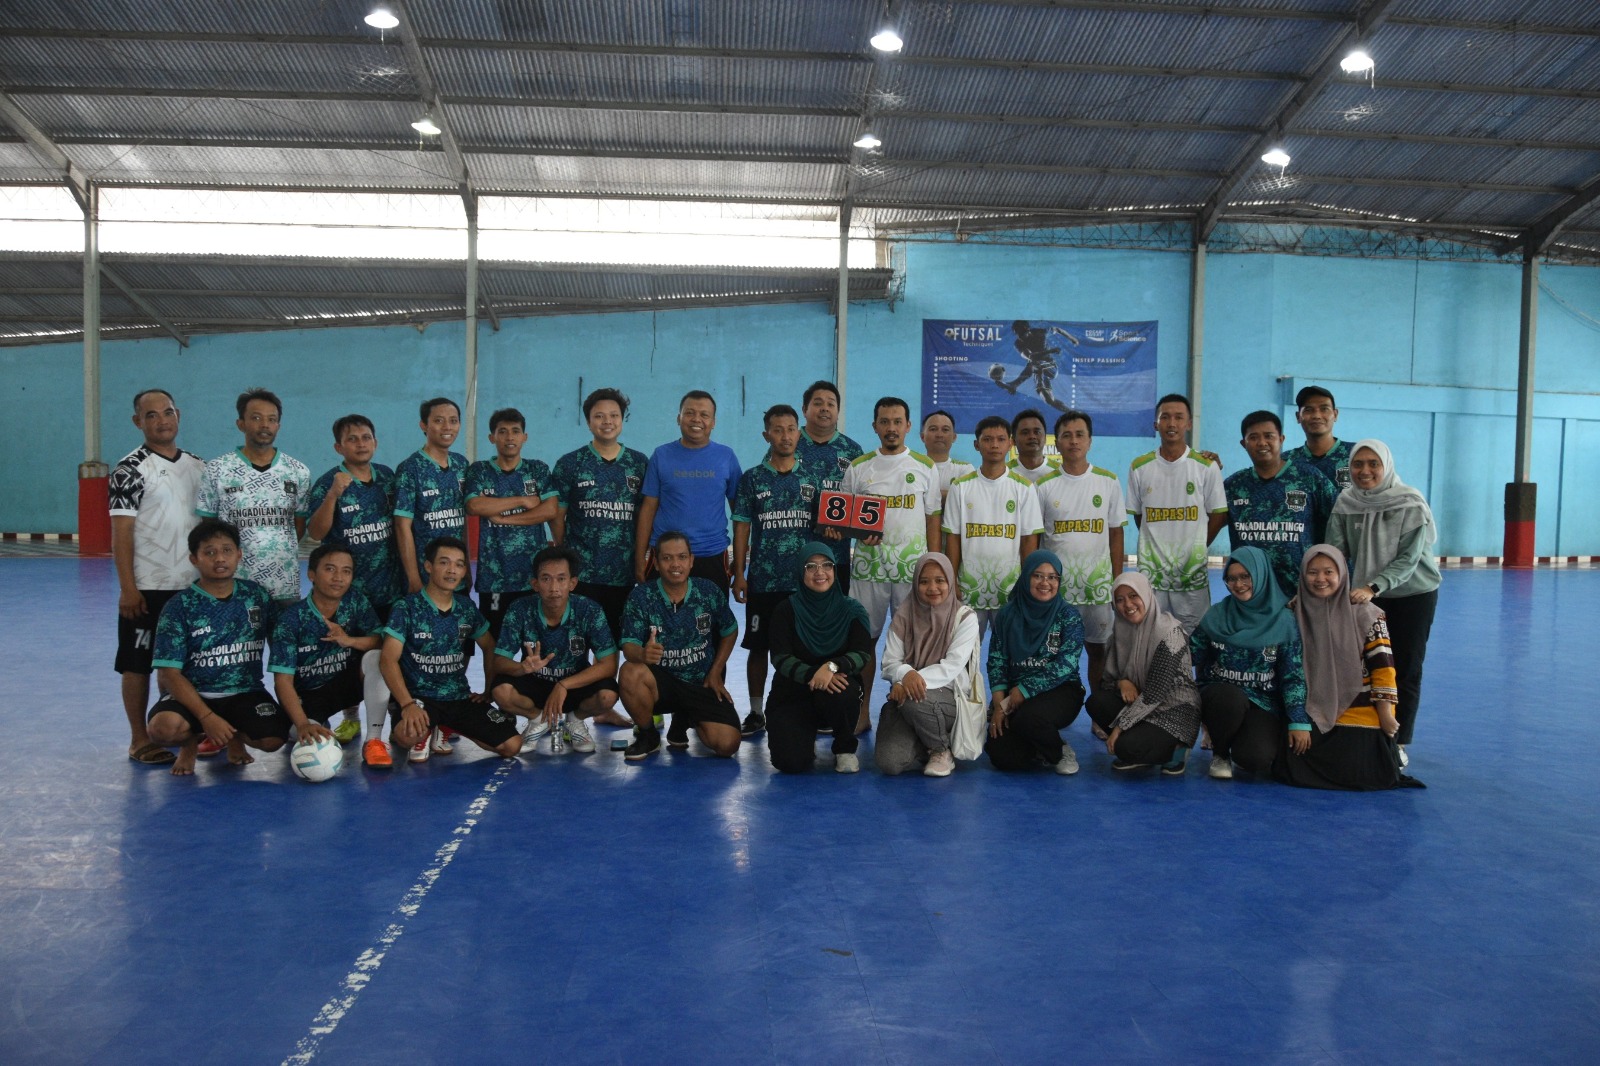 Pengadilan Negeri Yogyakarta Mengikuti Pertandingan Futsal melawan Pengadilan Tinggi Yogyakarta